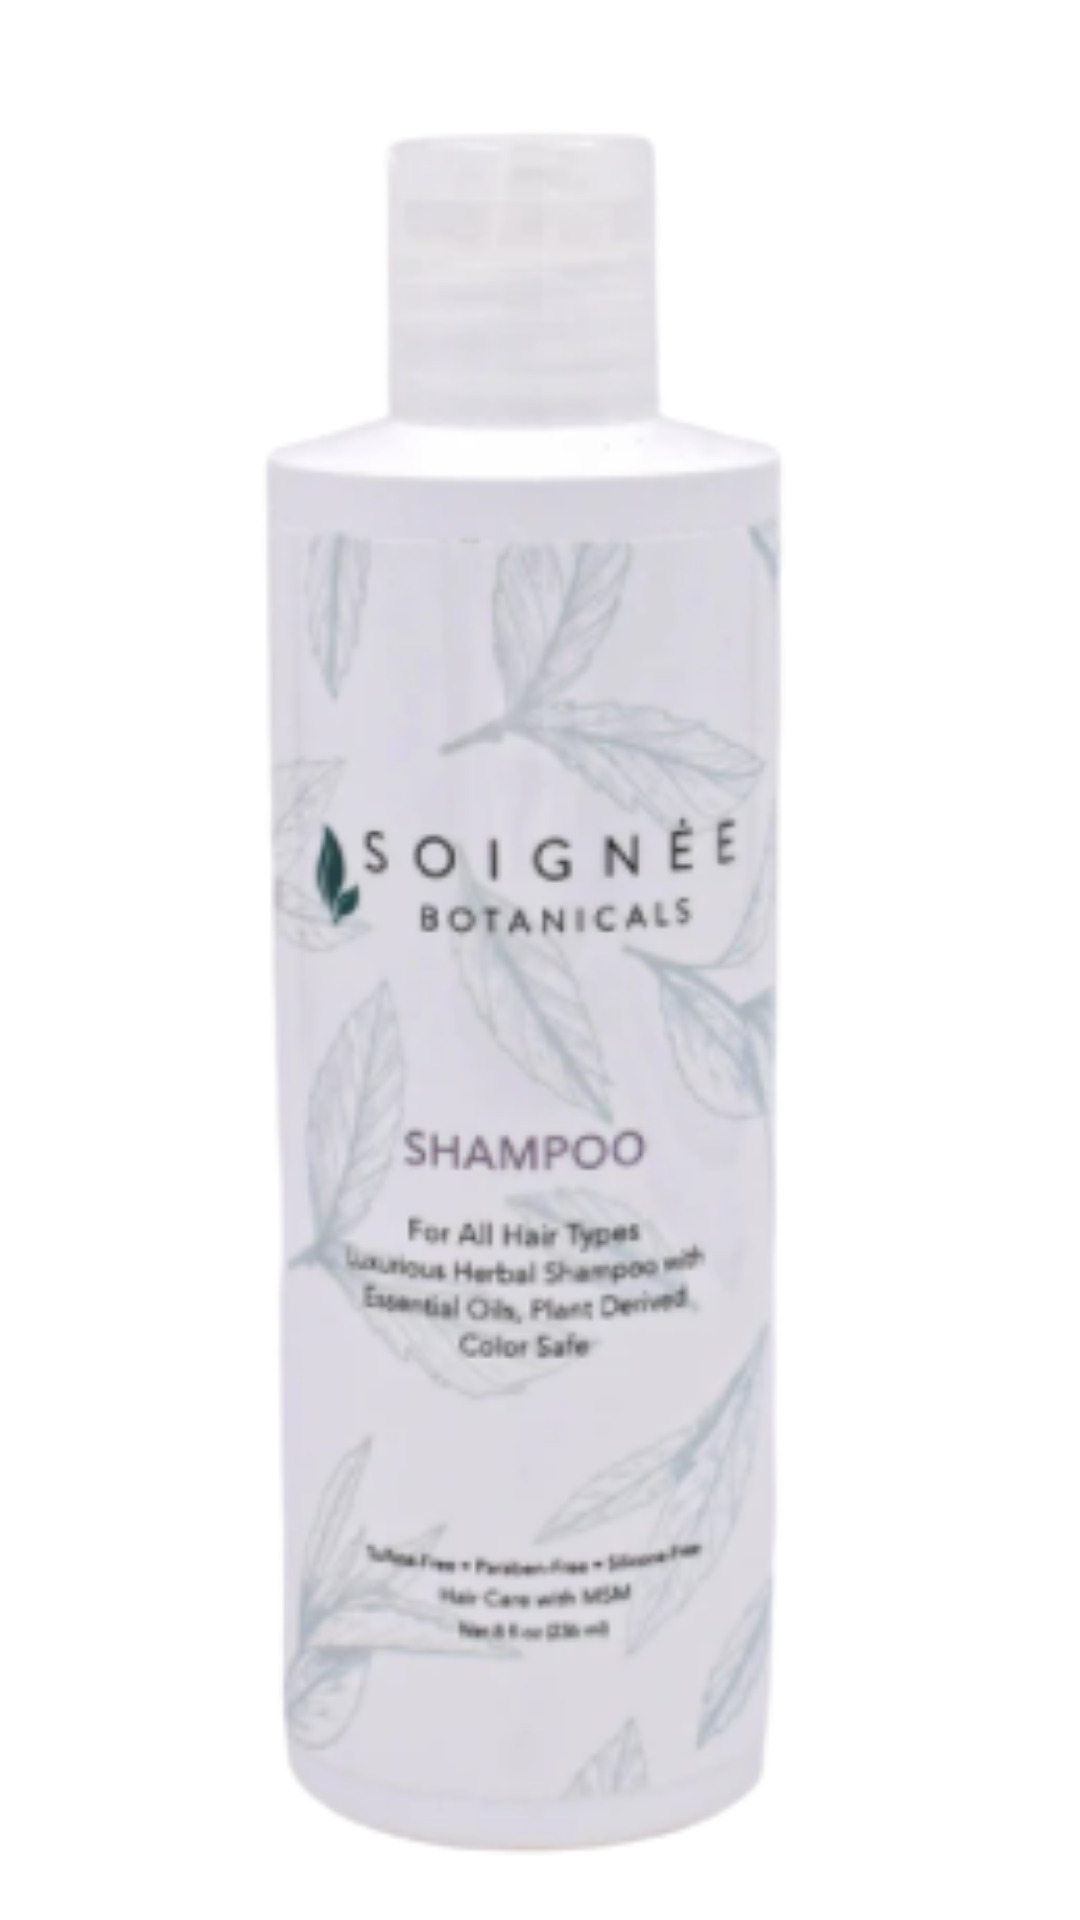 Soignee Botanical Shampoo 16 oz